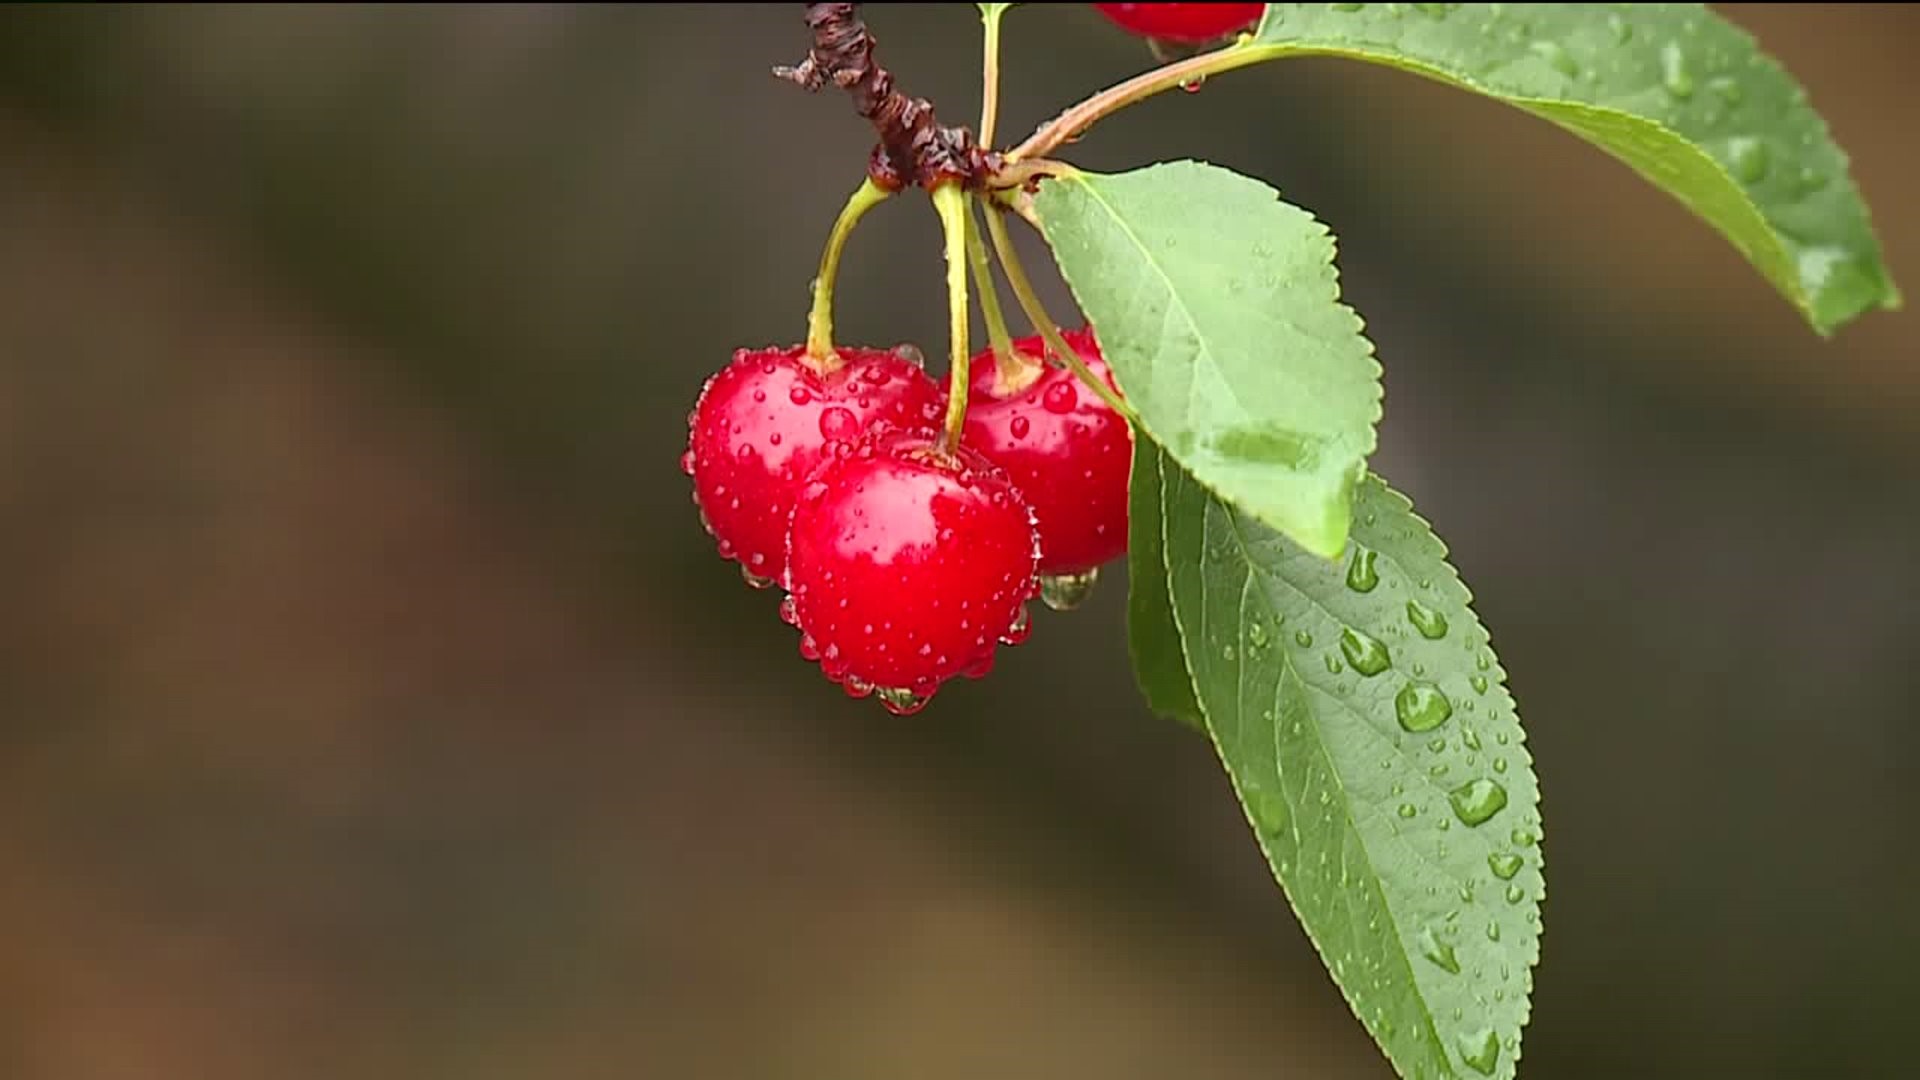 Despite Rain, Cherries Ripen at Farm in the Poconos